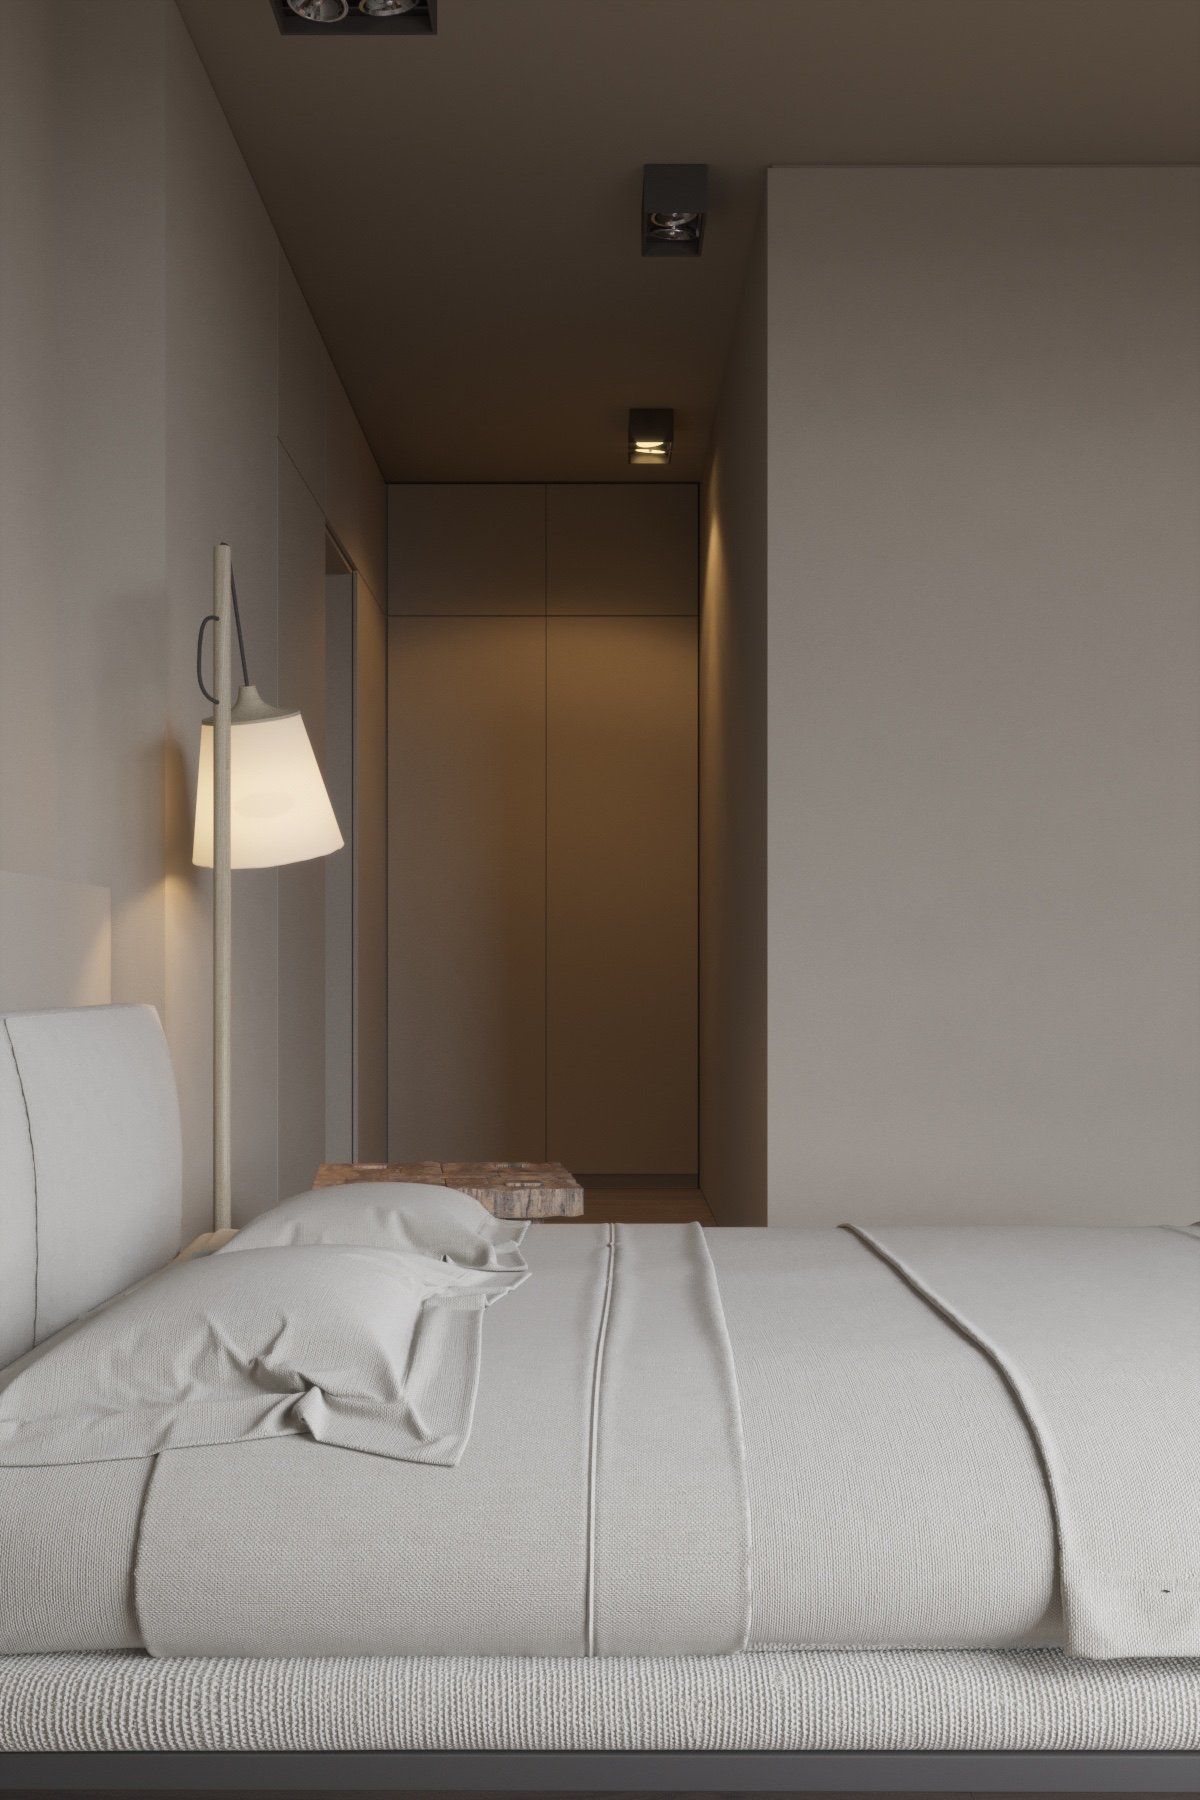 Một chiếc giường ga trắng giản đơn ở trung tâm hòa quyện với màu sắc của những bức tường.